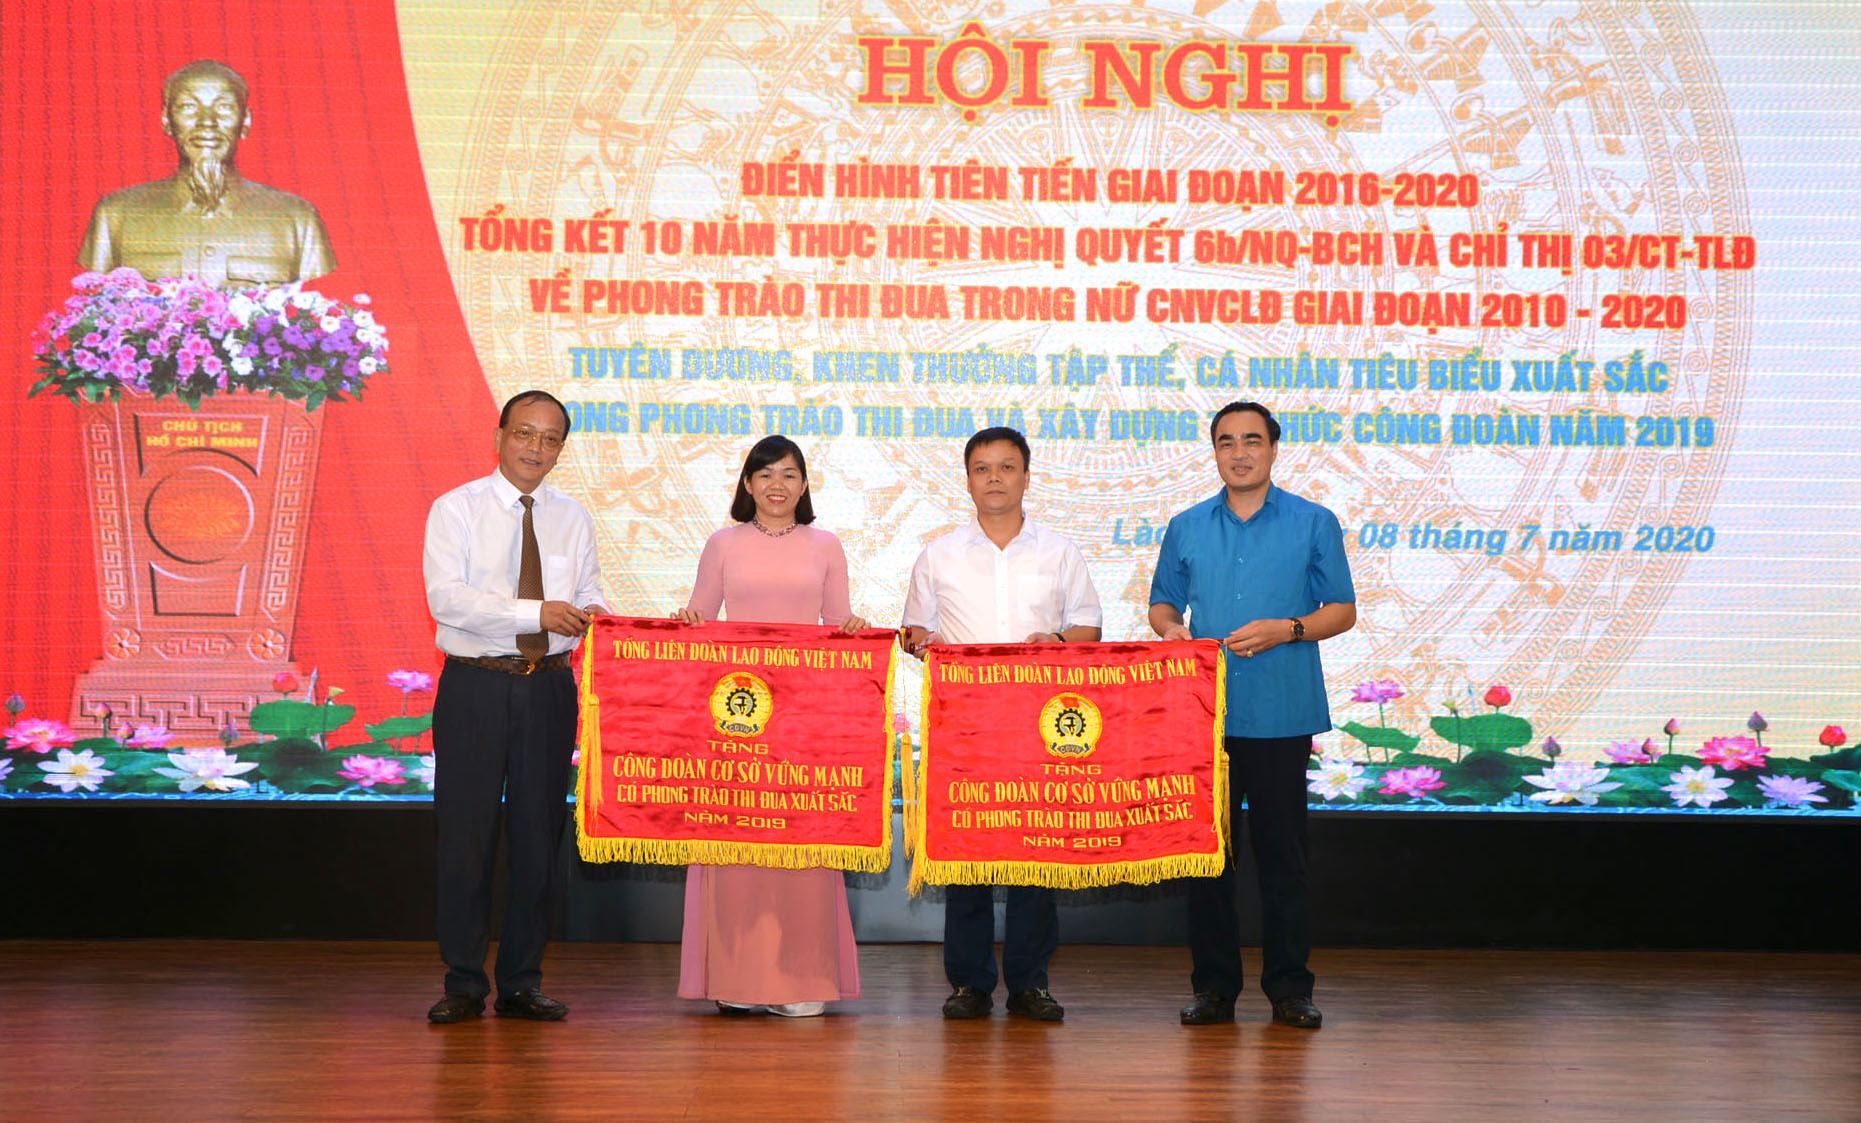 Trao Cờ thi đua của Tổng LĐLĐ Việt Nam cho tập thể đạt danh hiệu ”Công đoàn cơ sở vững mạnh, có phong trào thi đua xuất sắc” năm 2019